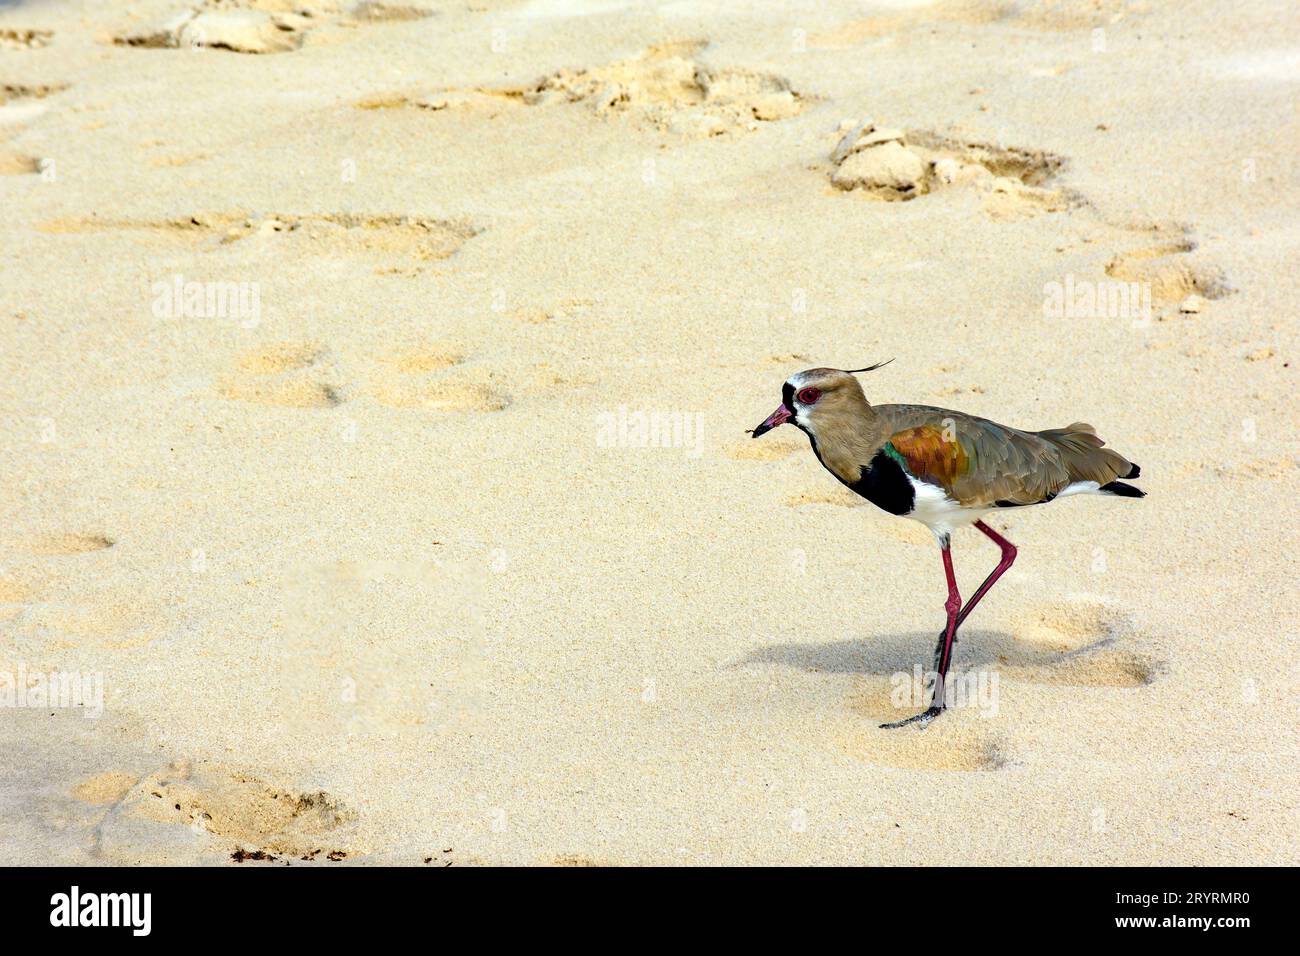 Beautiful Southern Lapwing walking on the beach sand Stock Photo